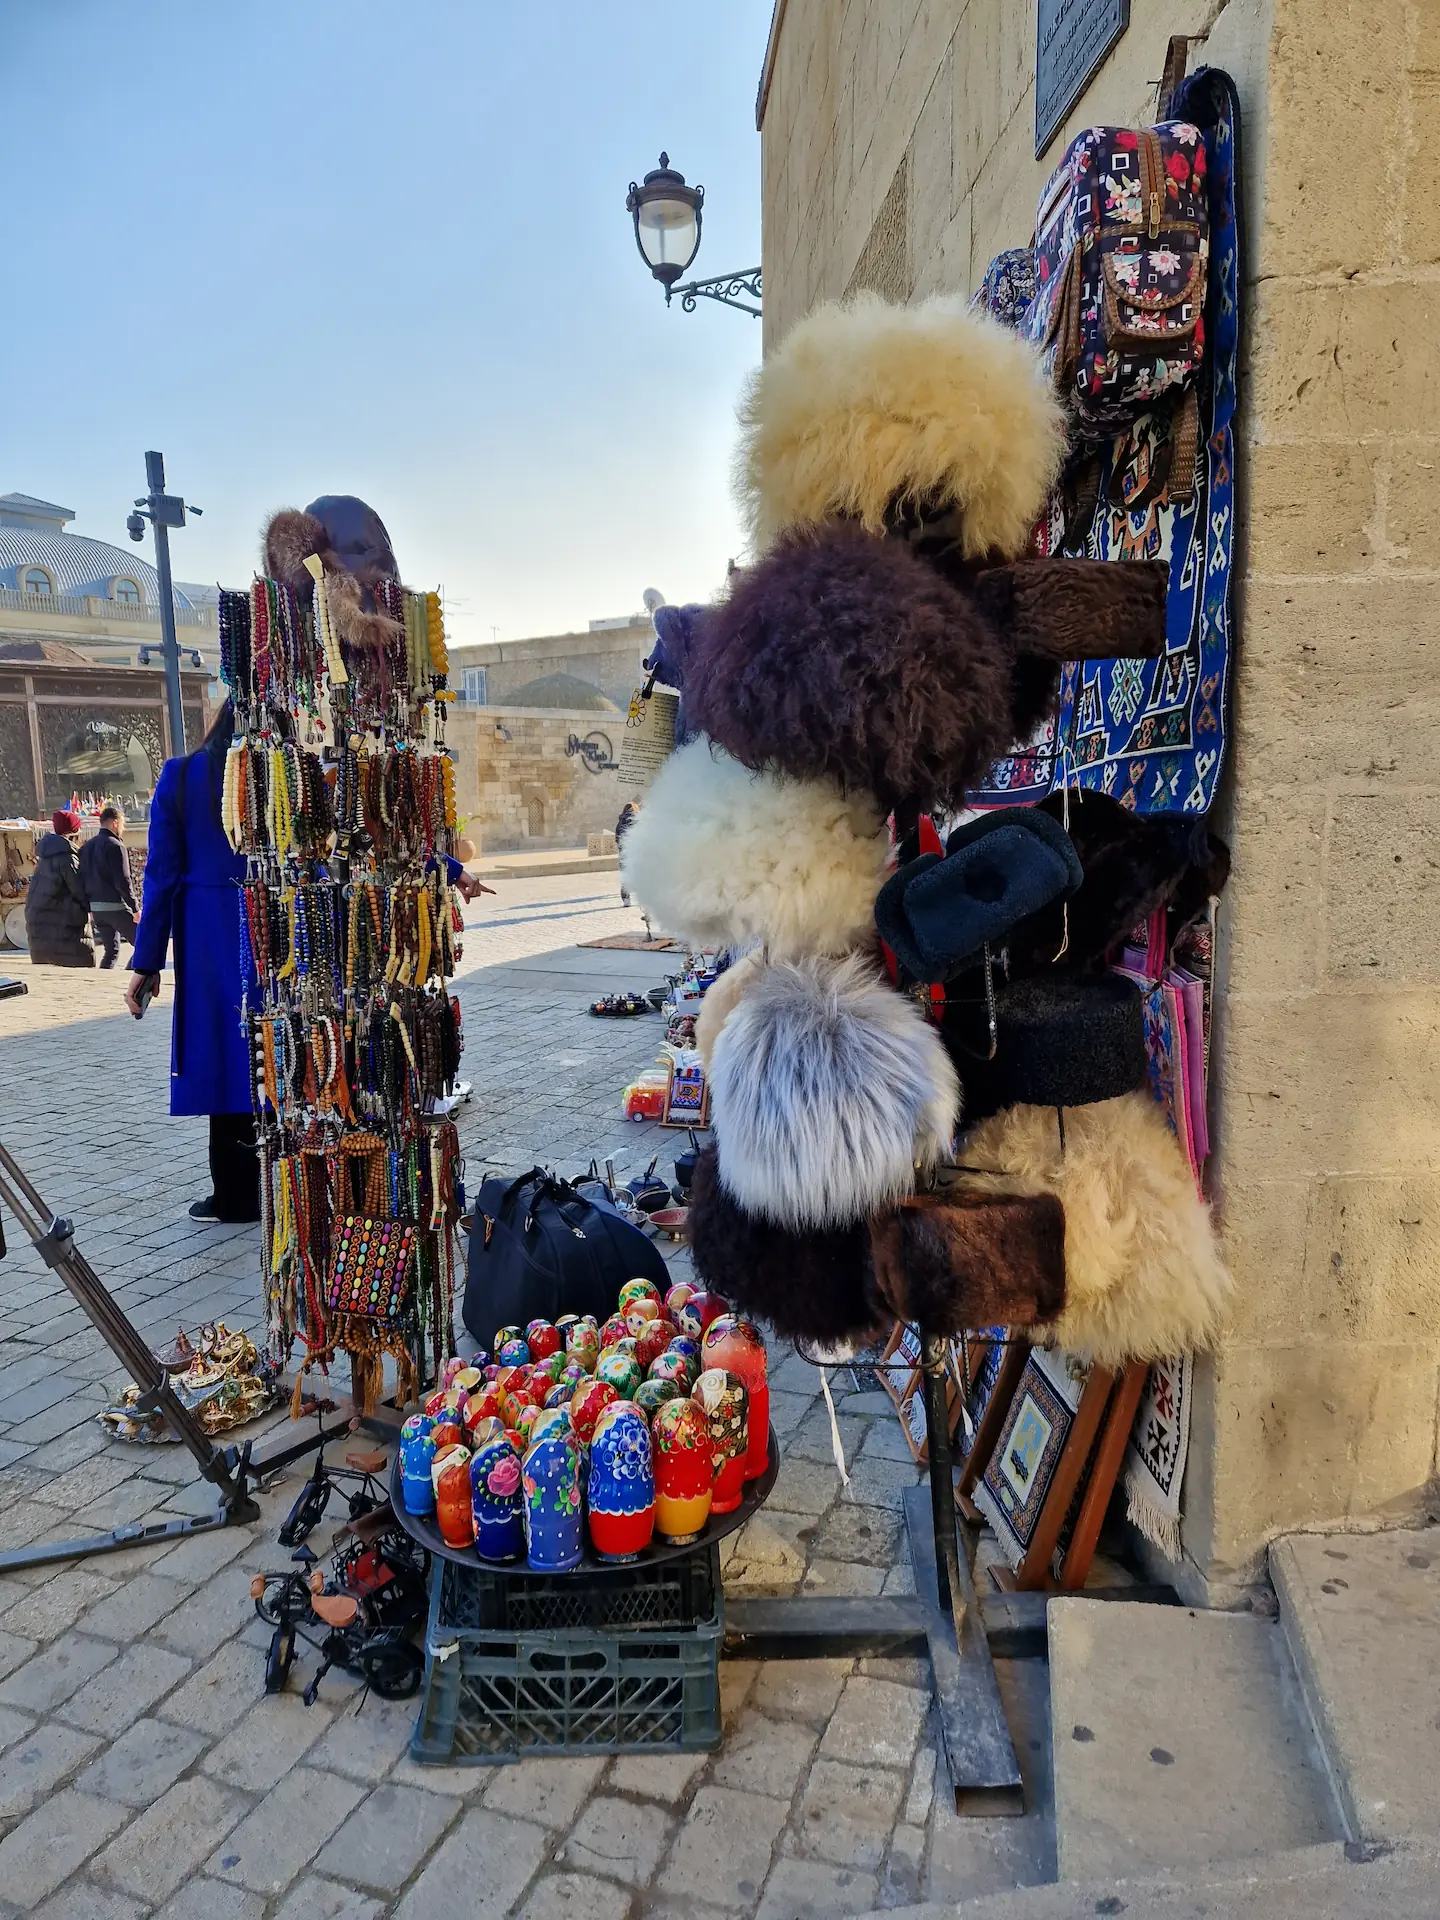 Un stand de souvenir vendant des chapeaux en fourrure souvent vendus dans la région